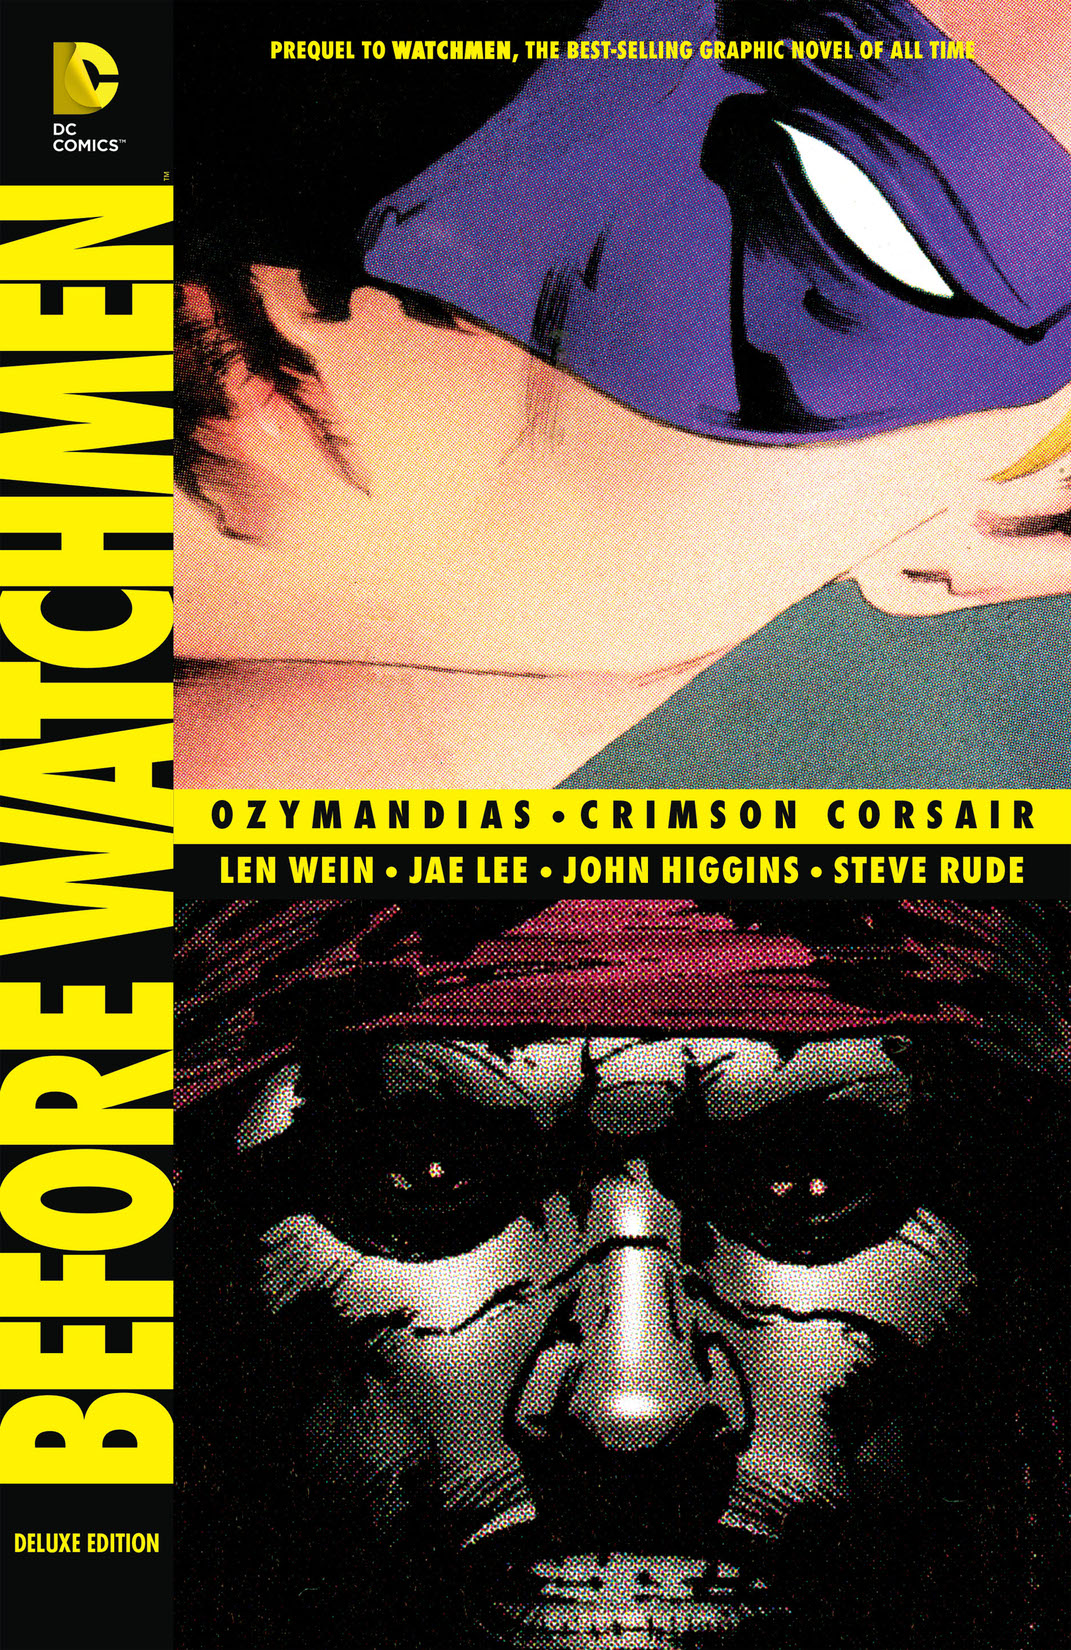 Before Watchmen: Ozymandias/Crimson Corsair preview images